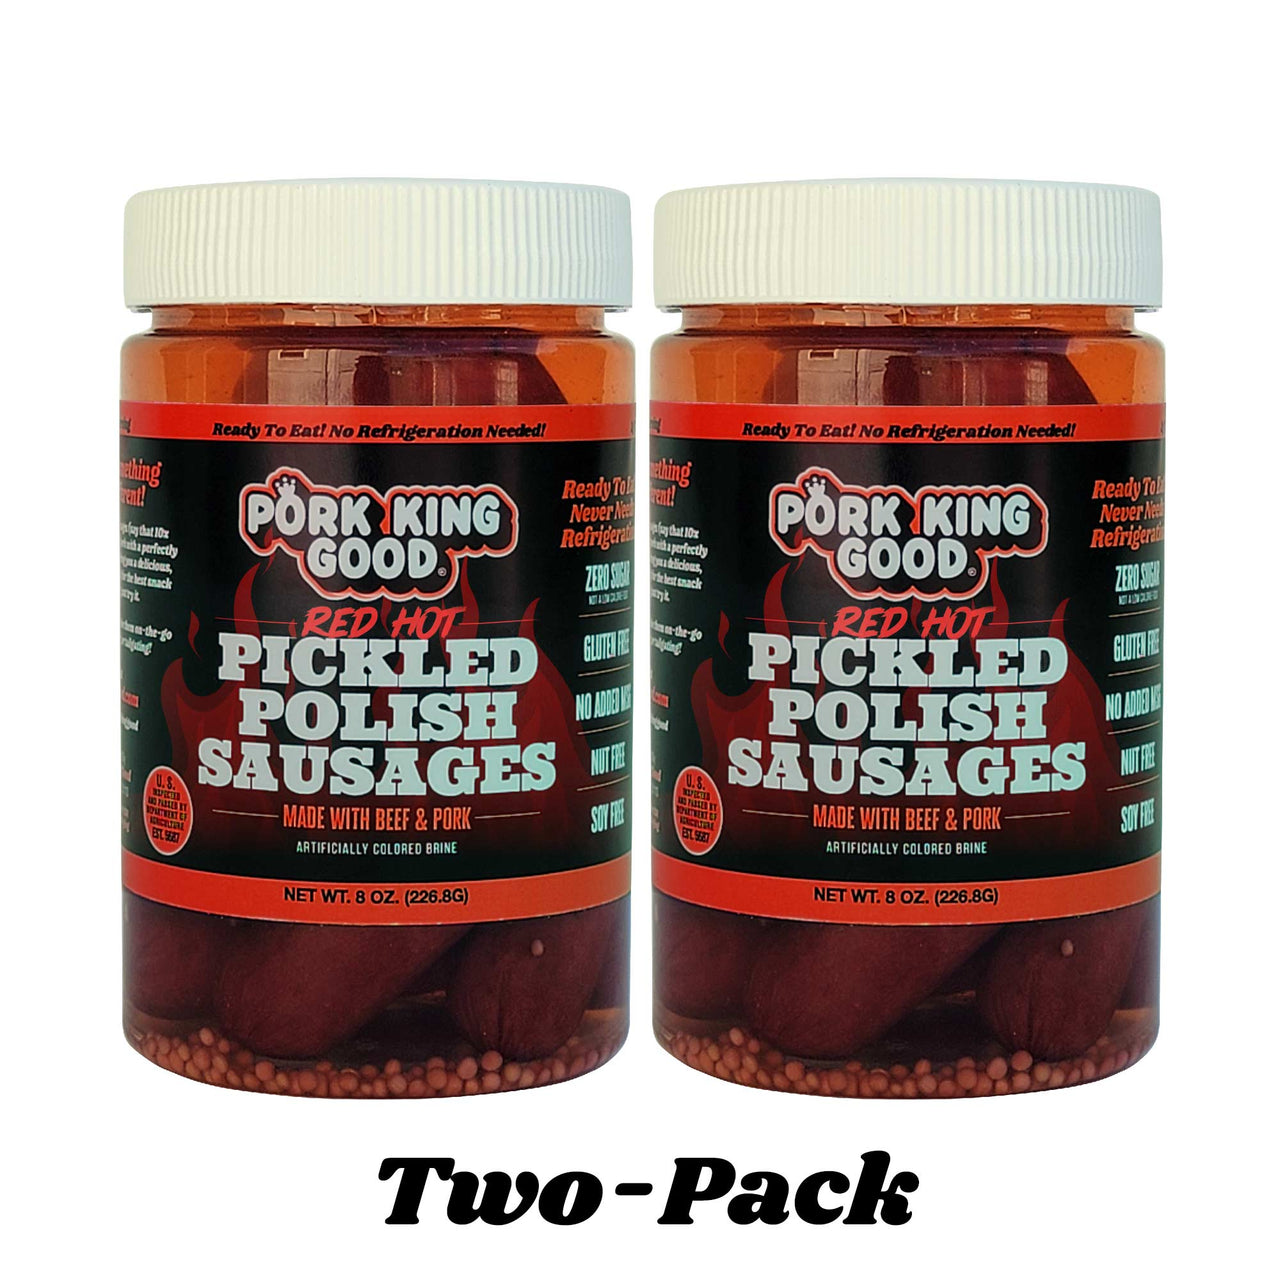 Pork King Good Red Hot Pickled Polish Sausage 2 Pack